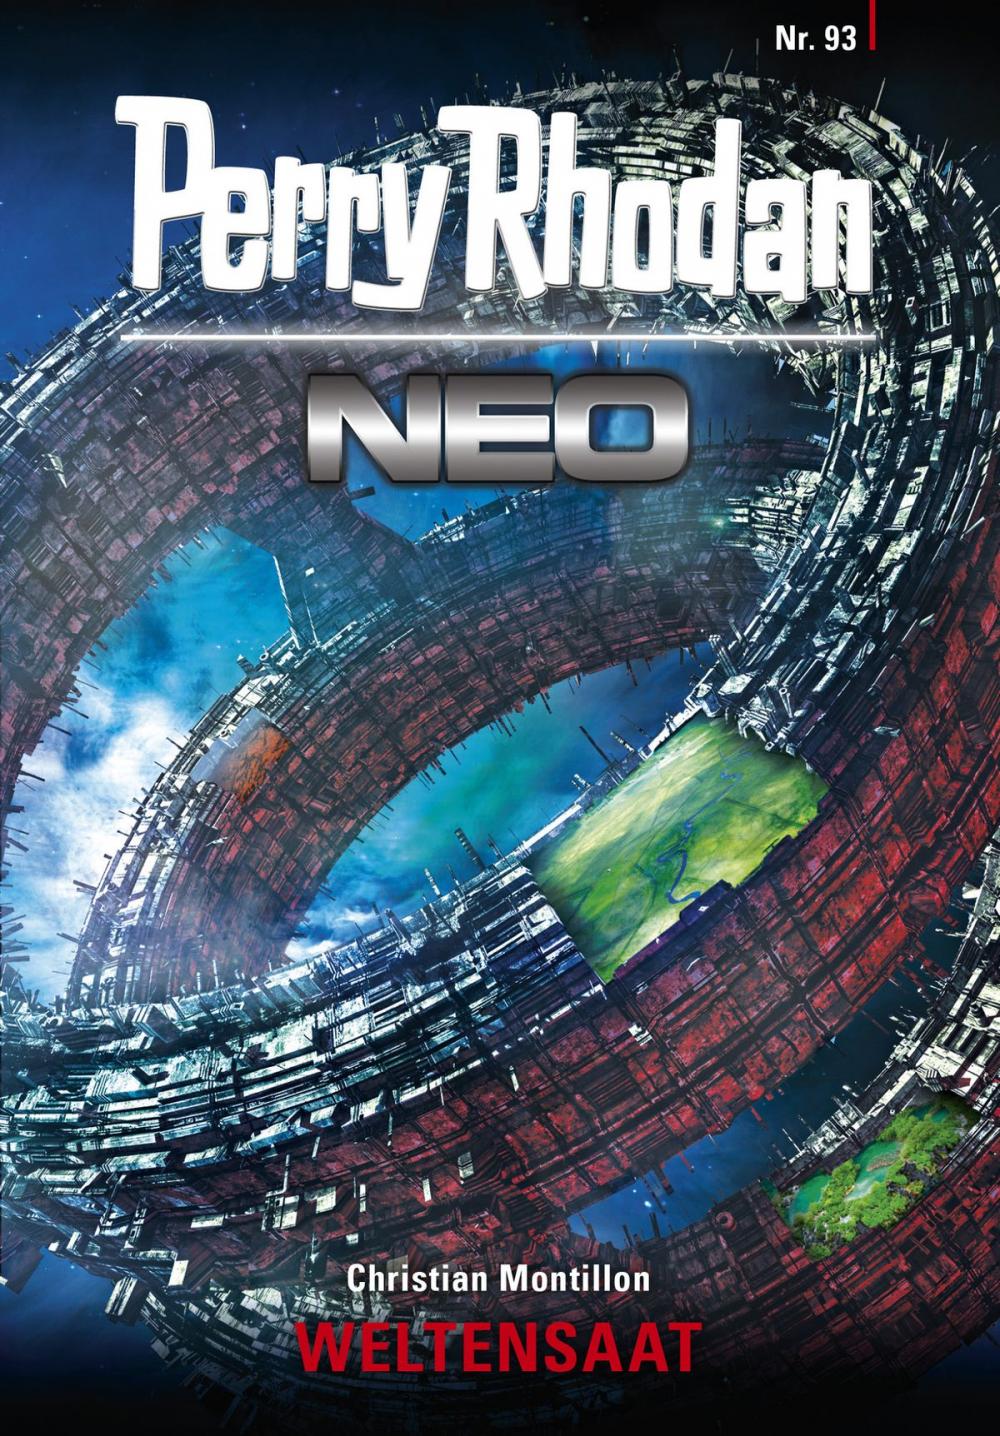 Big bigCover of Perry Rhodan Neo 93: WELTENSAAT